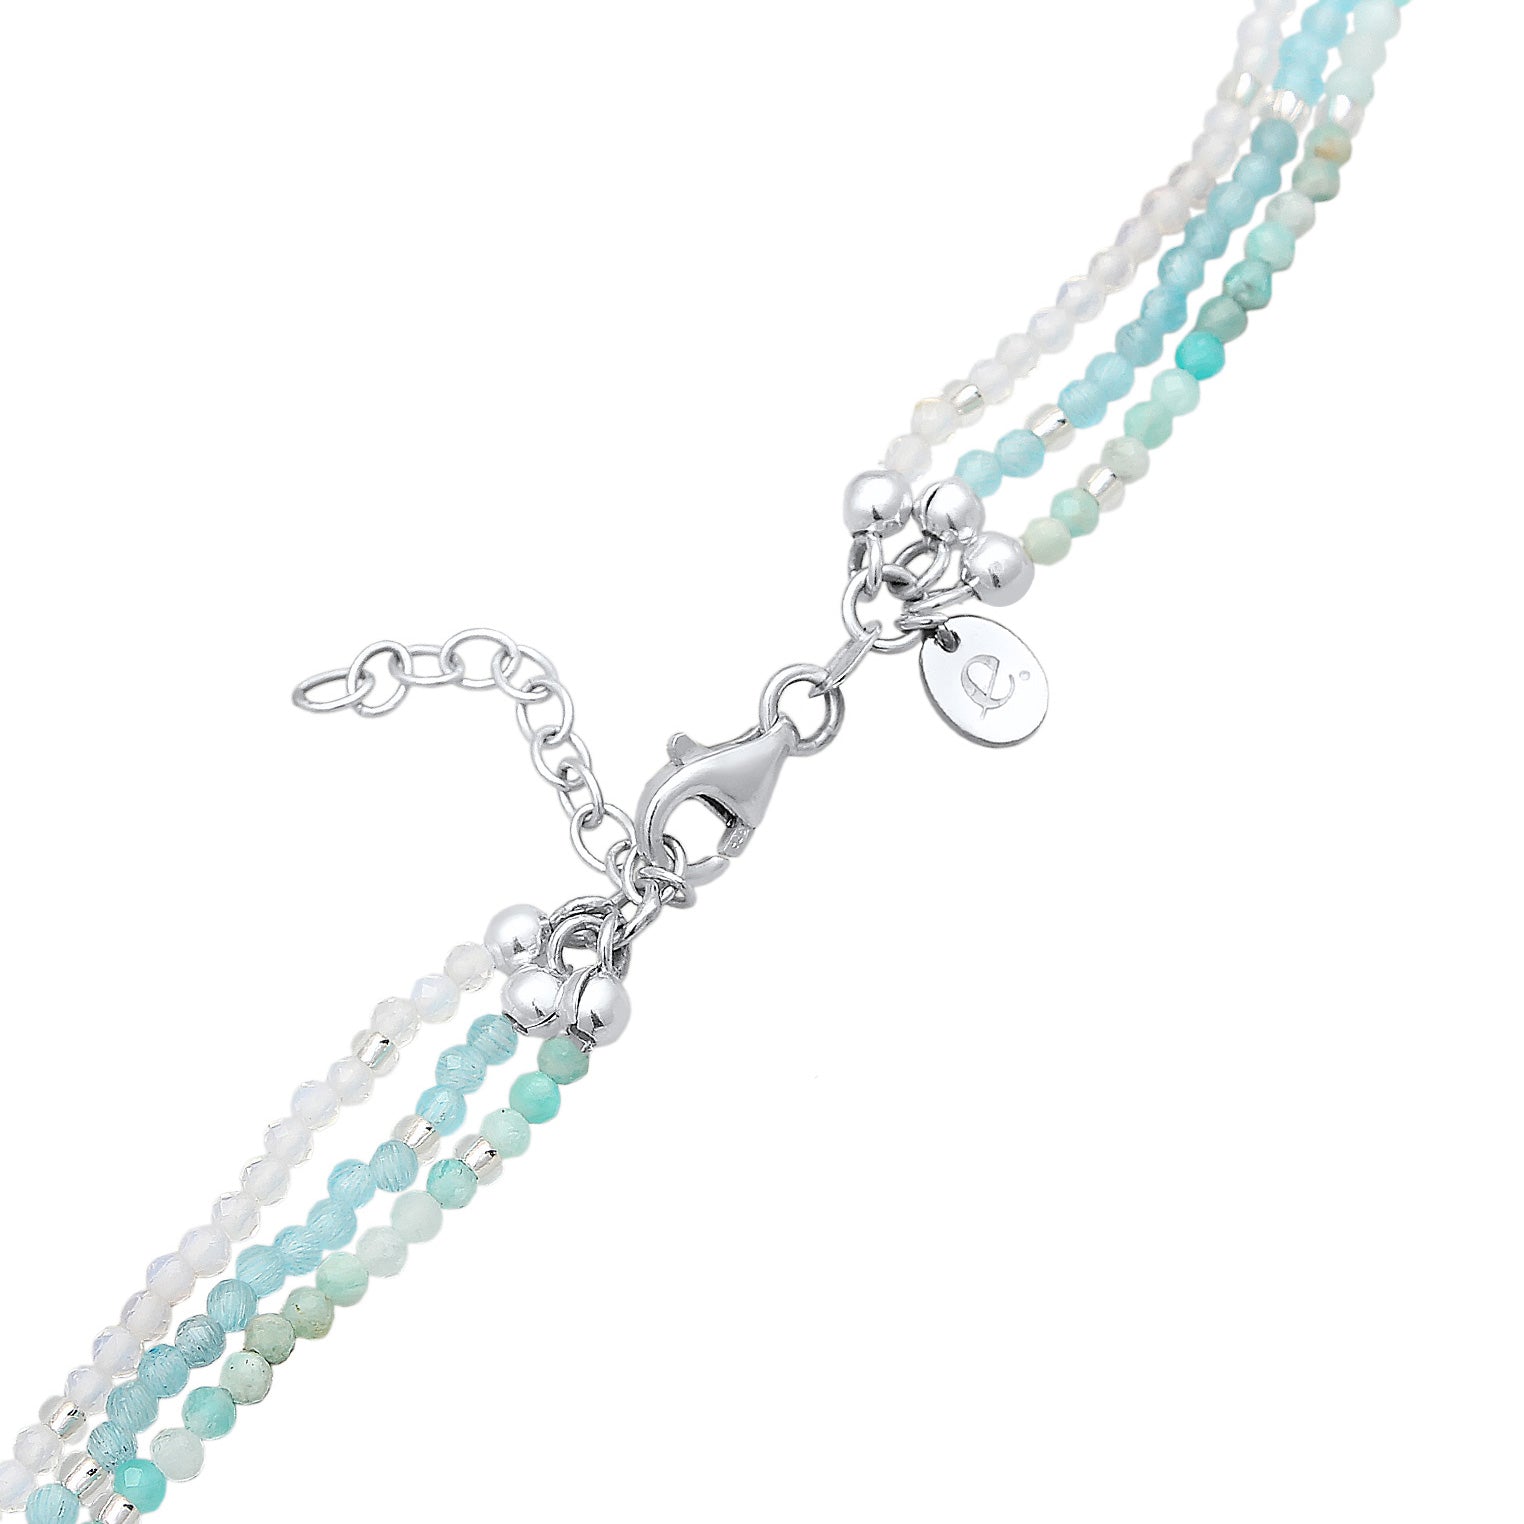 Silber - Elli PREMIUM | Choker Beads | Amazonit (Hellblau), Mondstein (Weiß) | 925er Sterling Silber